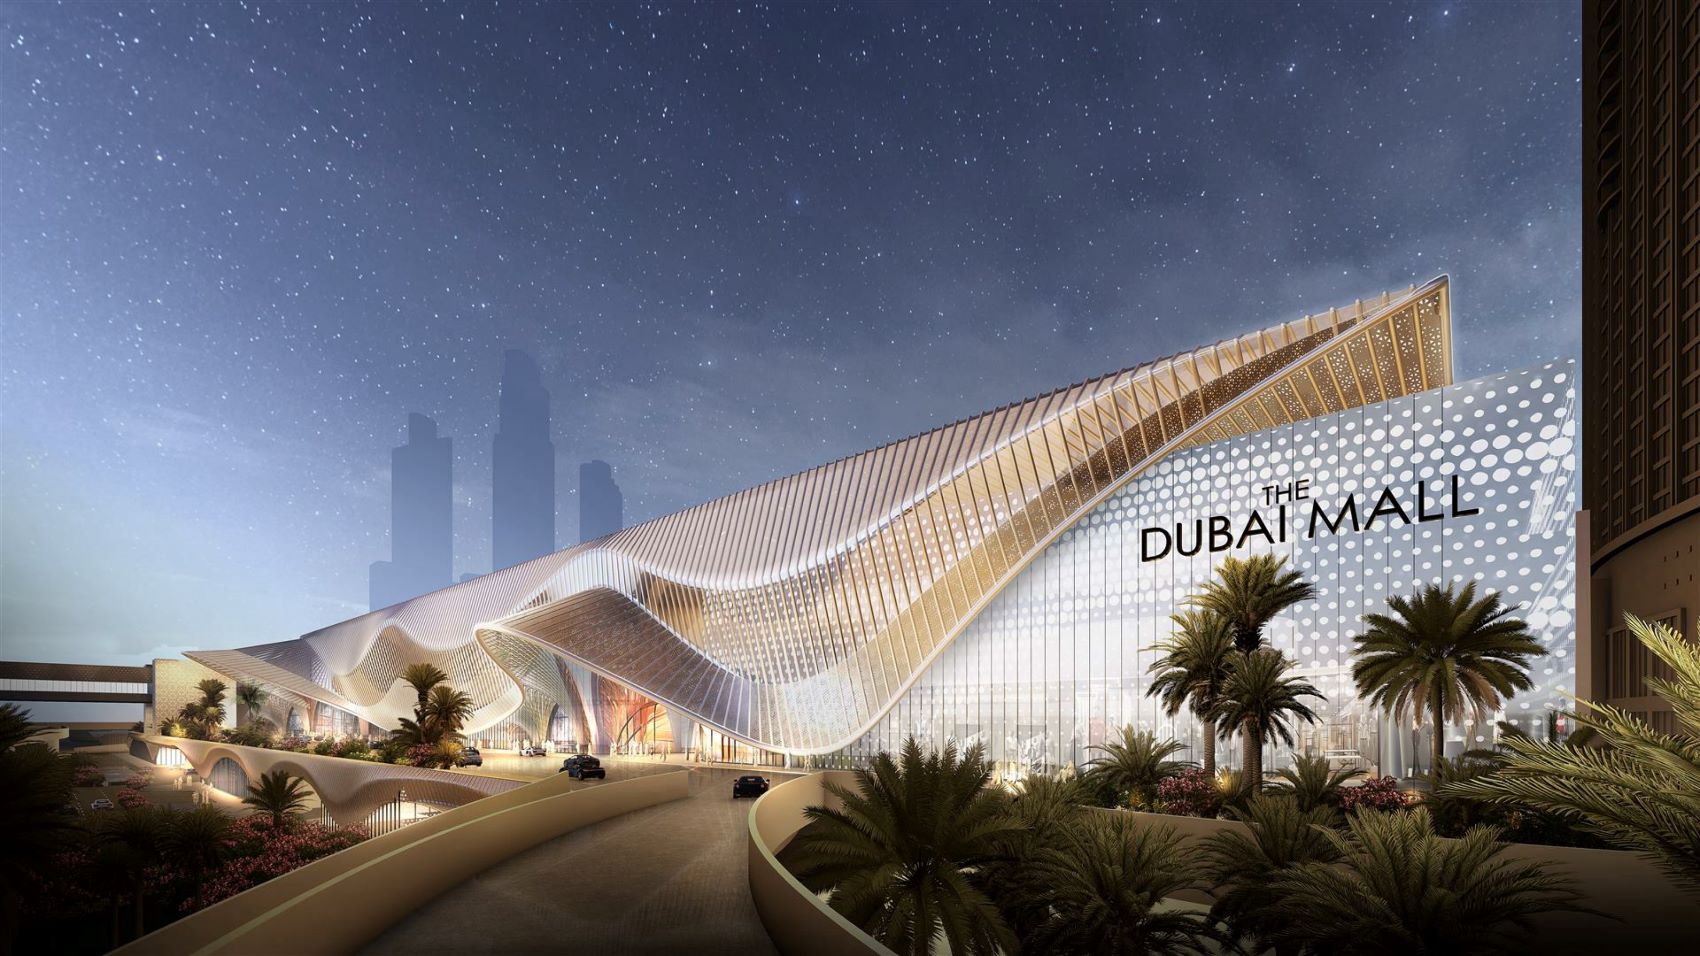 Ντουμπάι: Το μεγαλύτερο mall στον κόσμο ανοίγει άλλα 240 υπερπολυτελή καταστήματα